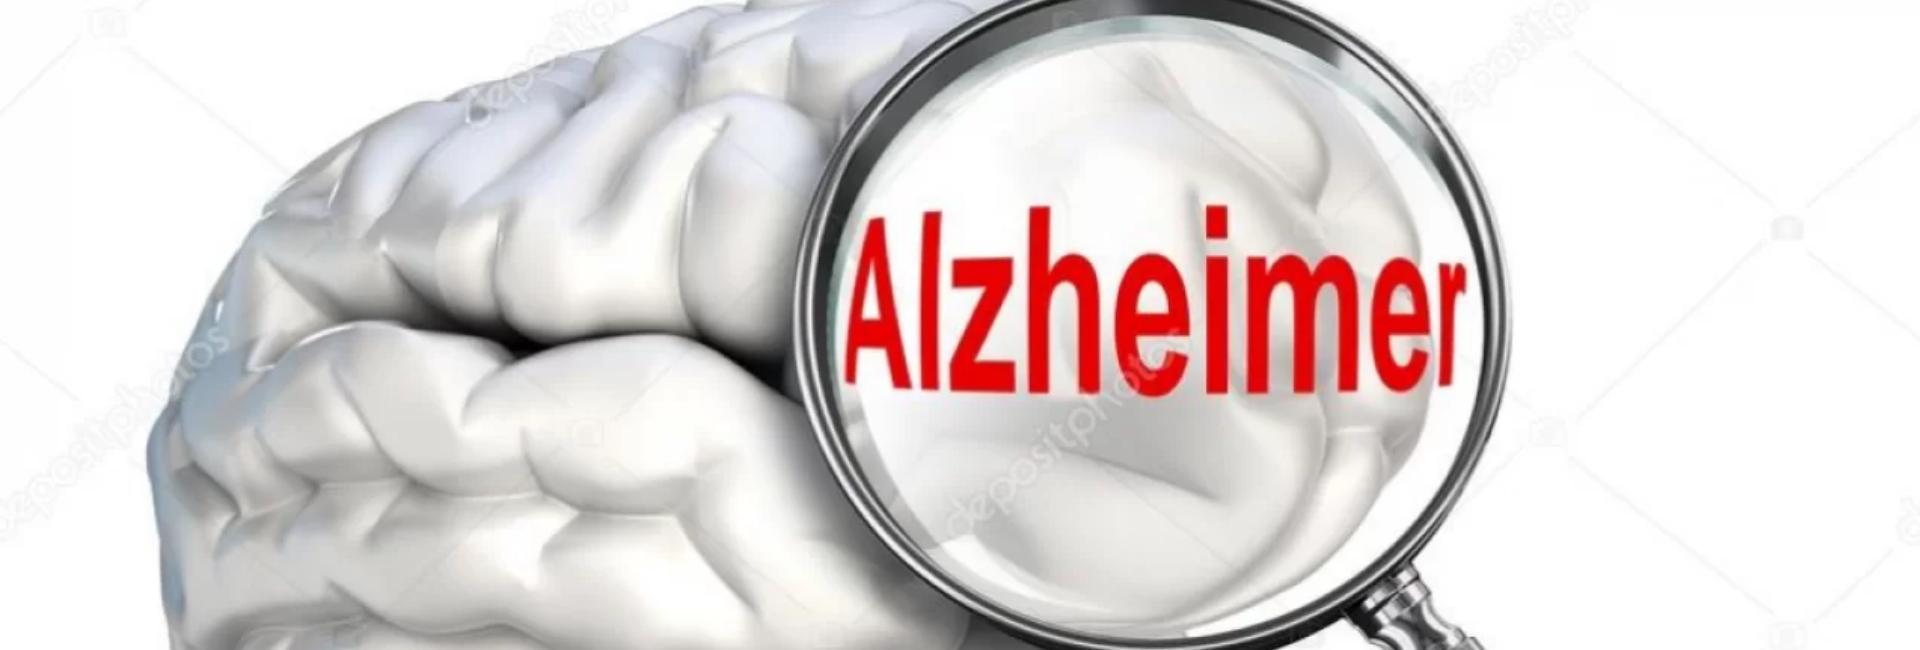 Cientistas desenvolvem exame capaz de detectar o Alzheimer 3,5 anos antes do diagnóstico clínico.